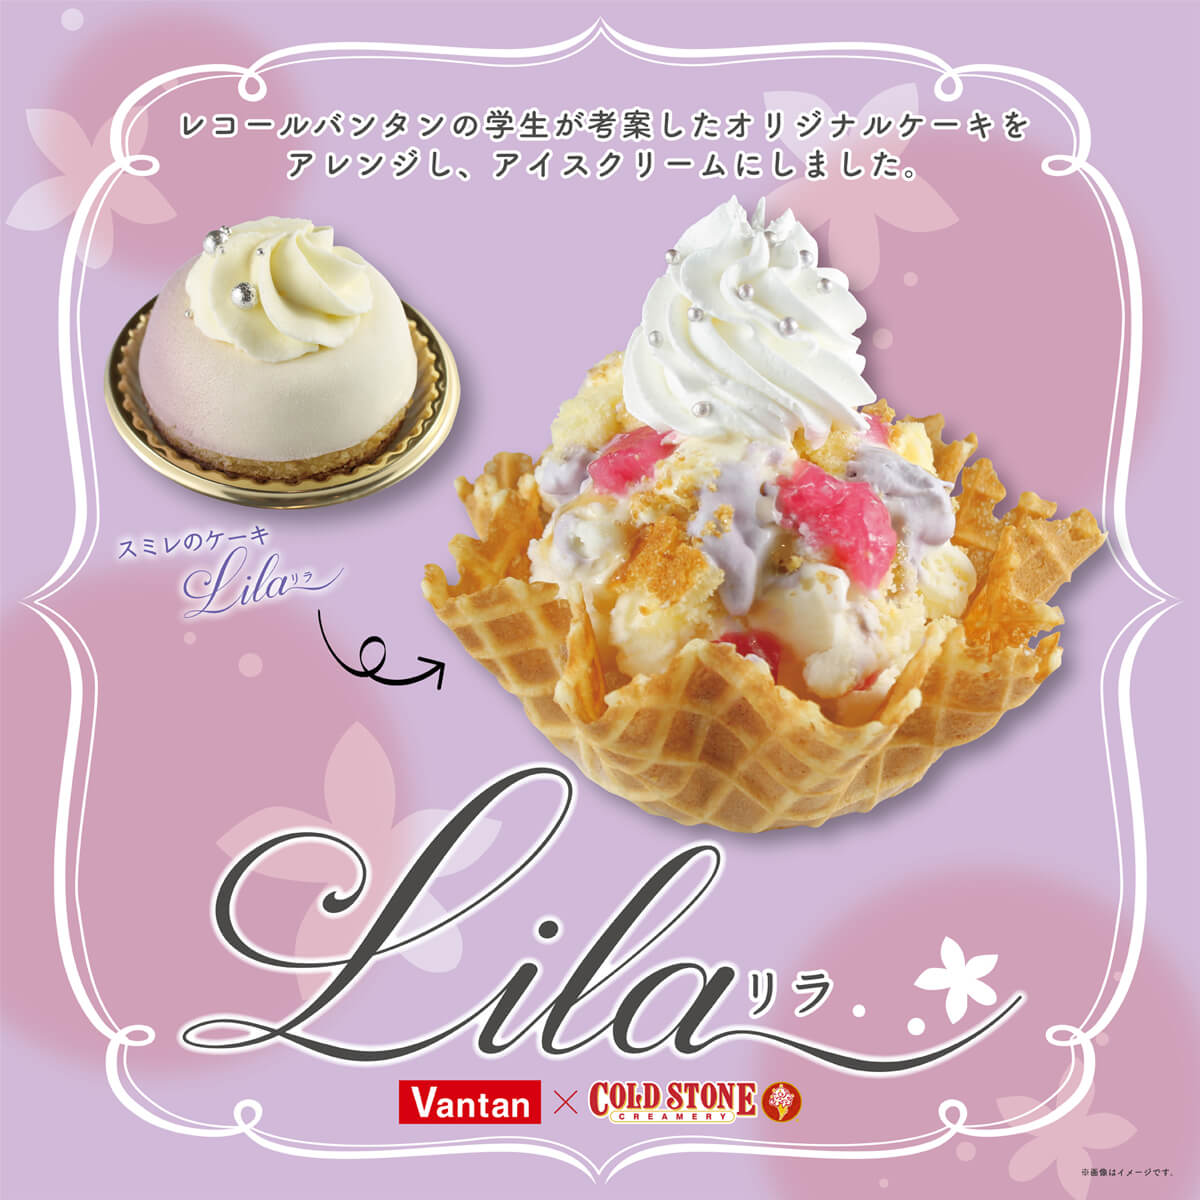 学生が考案したケーキを商品化 すみれ が香る Lila リラ 限定店舗にて発売 コールドストーンクリーマリージャパン Cold Stone Creamery Japan